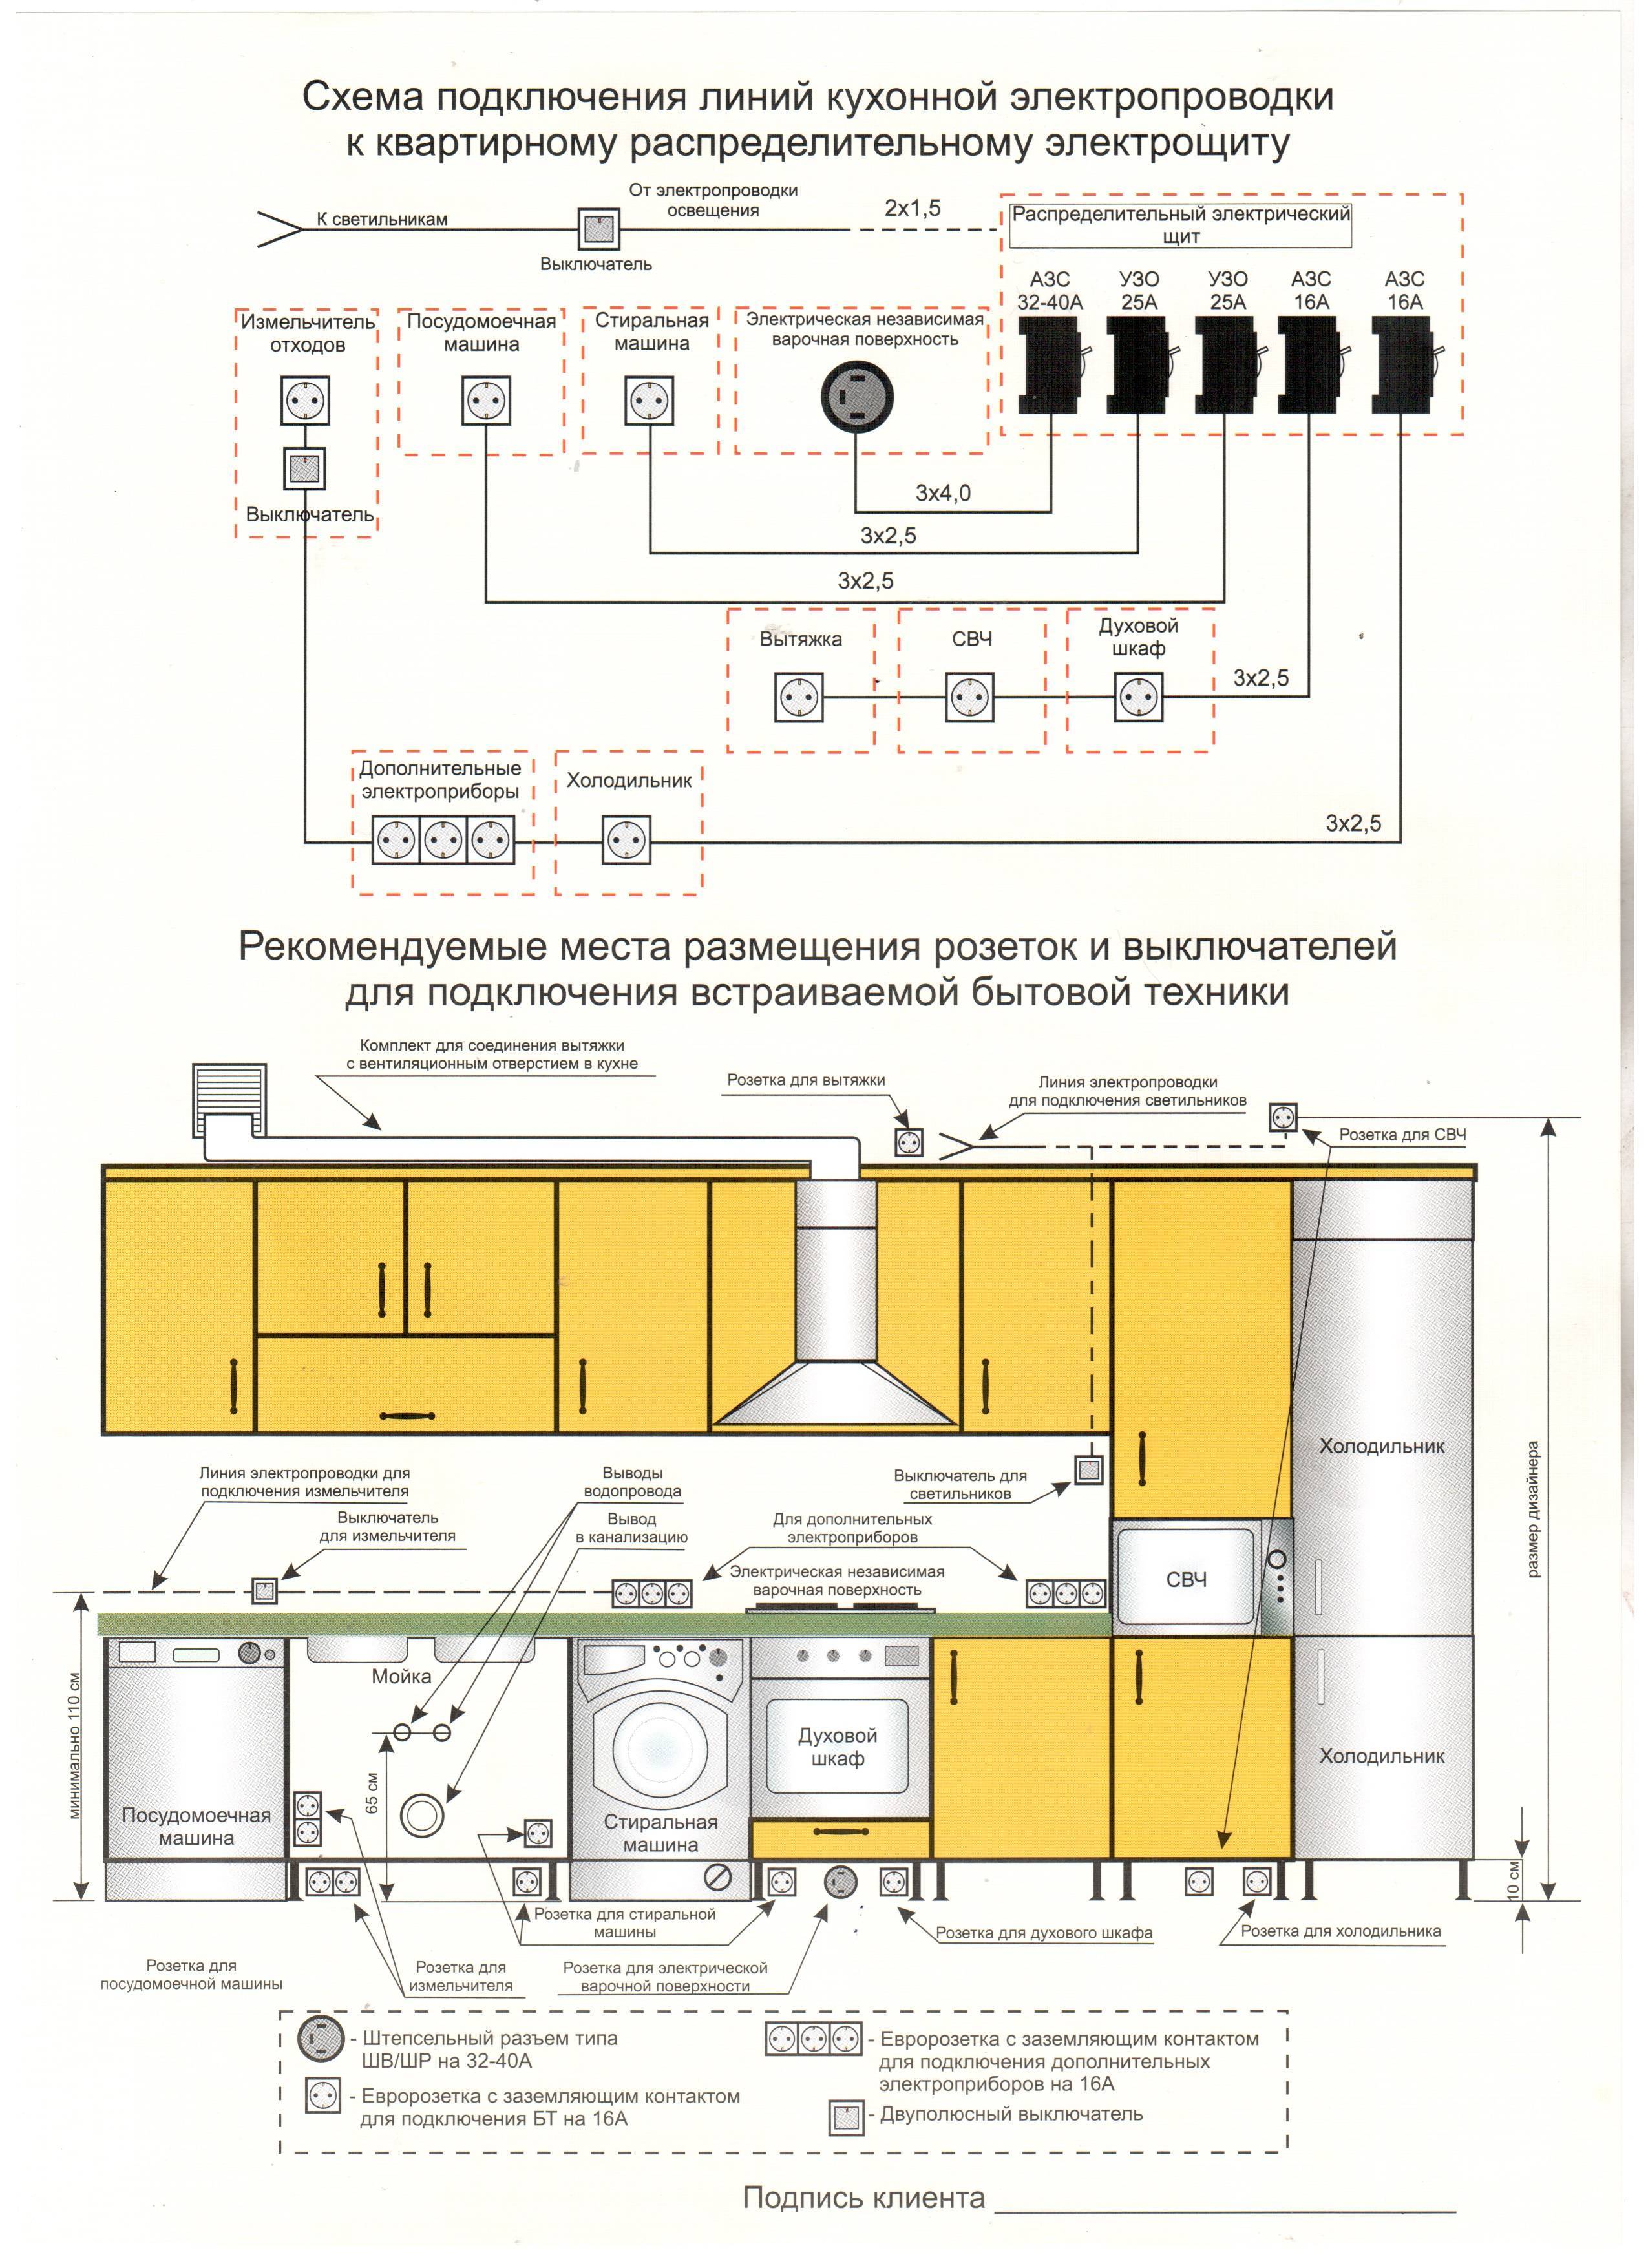 Как установить вытяжку на кухне - подключение к вентиляции и электросети